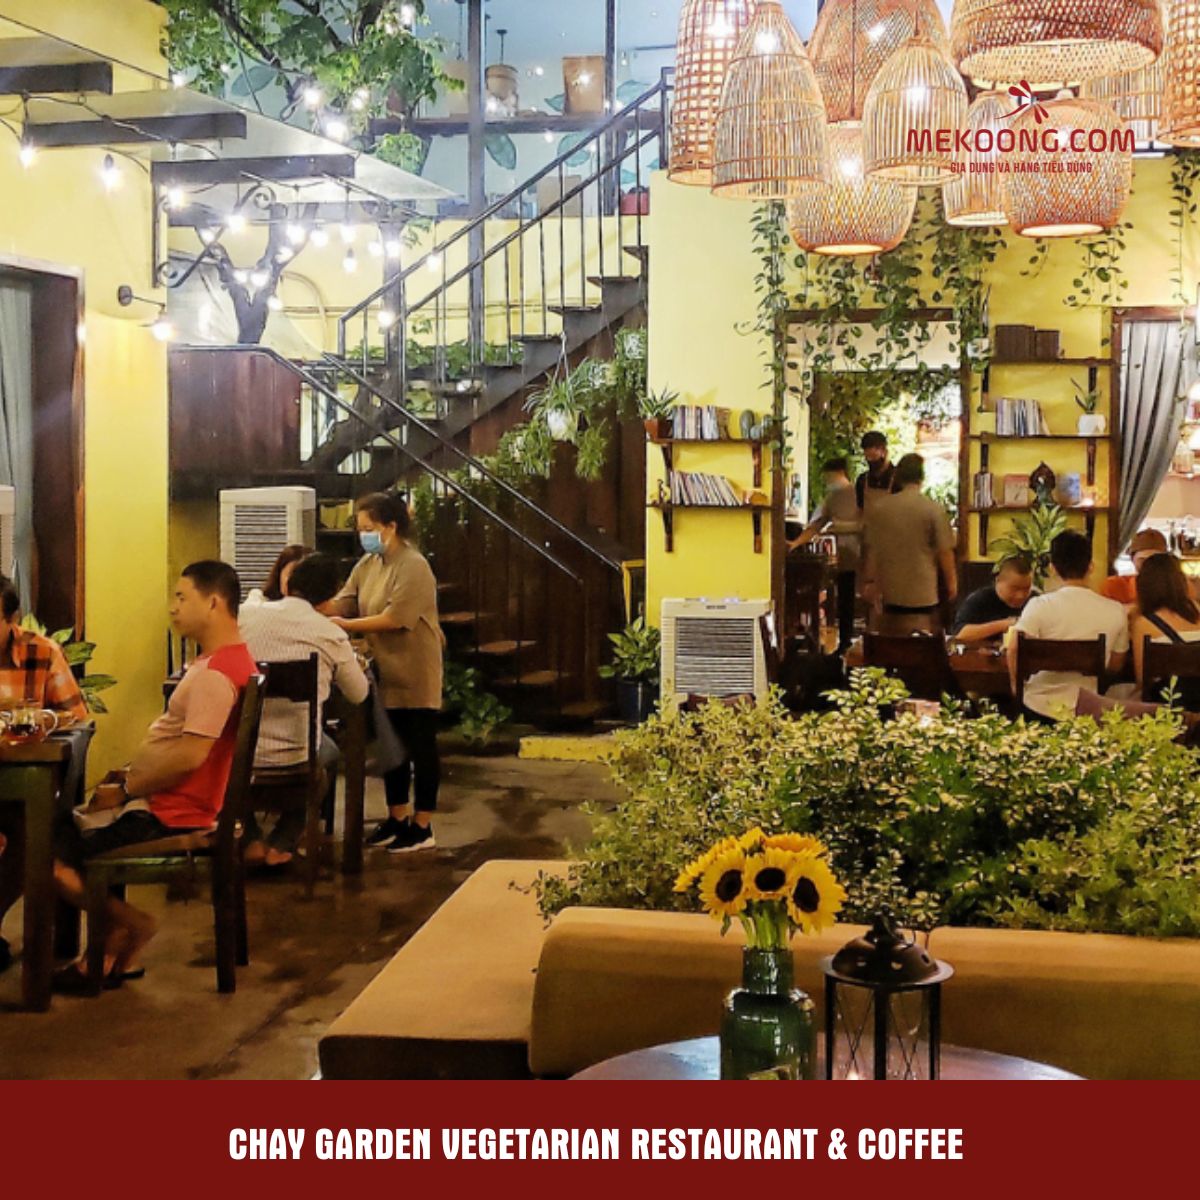 Chay Garden Vegetarian Restaurant & Coffee